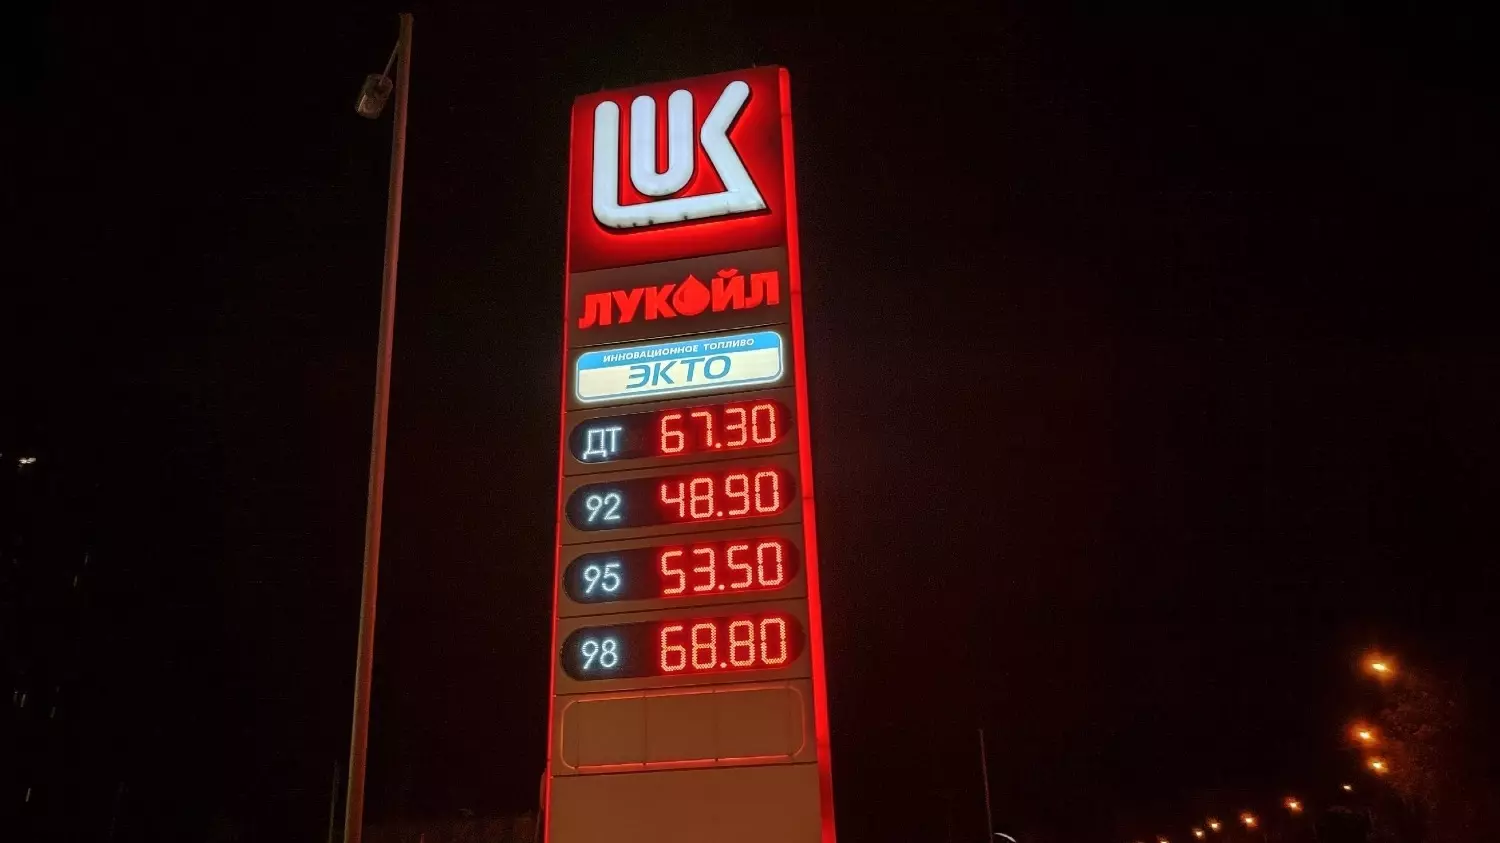 Цены на бензин и дизельное топливо на АЗС "Лукойл" в Новосибирске.